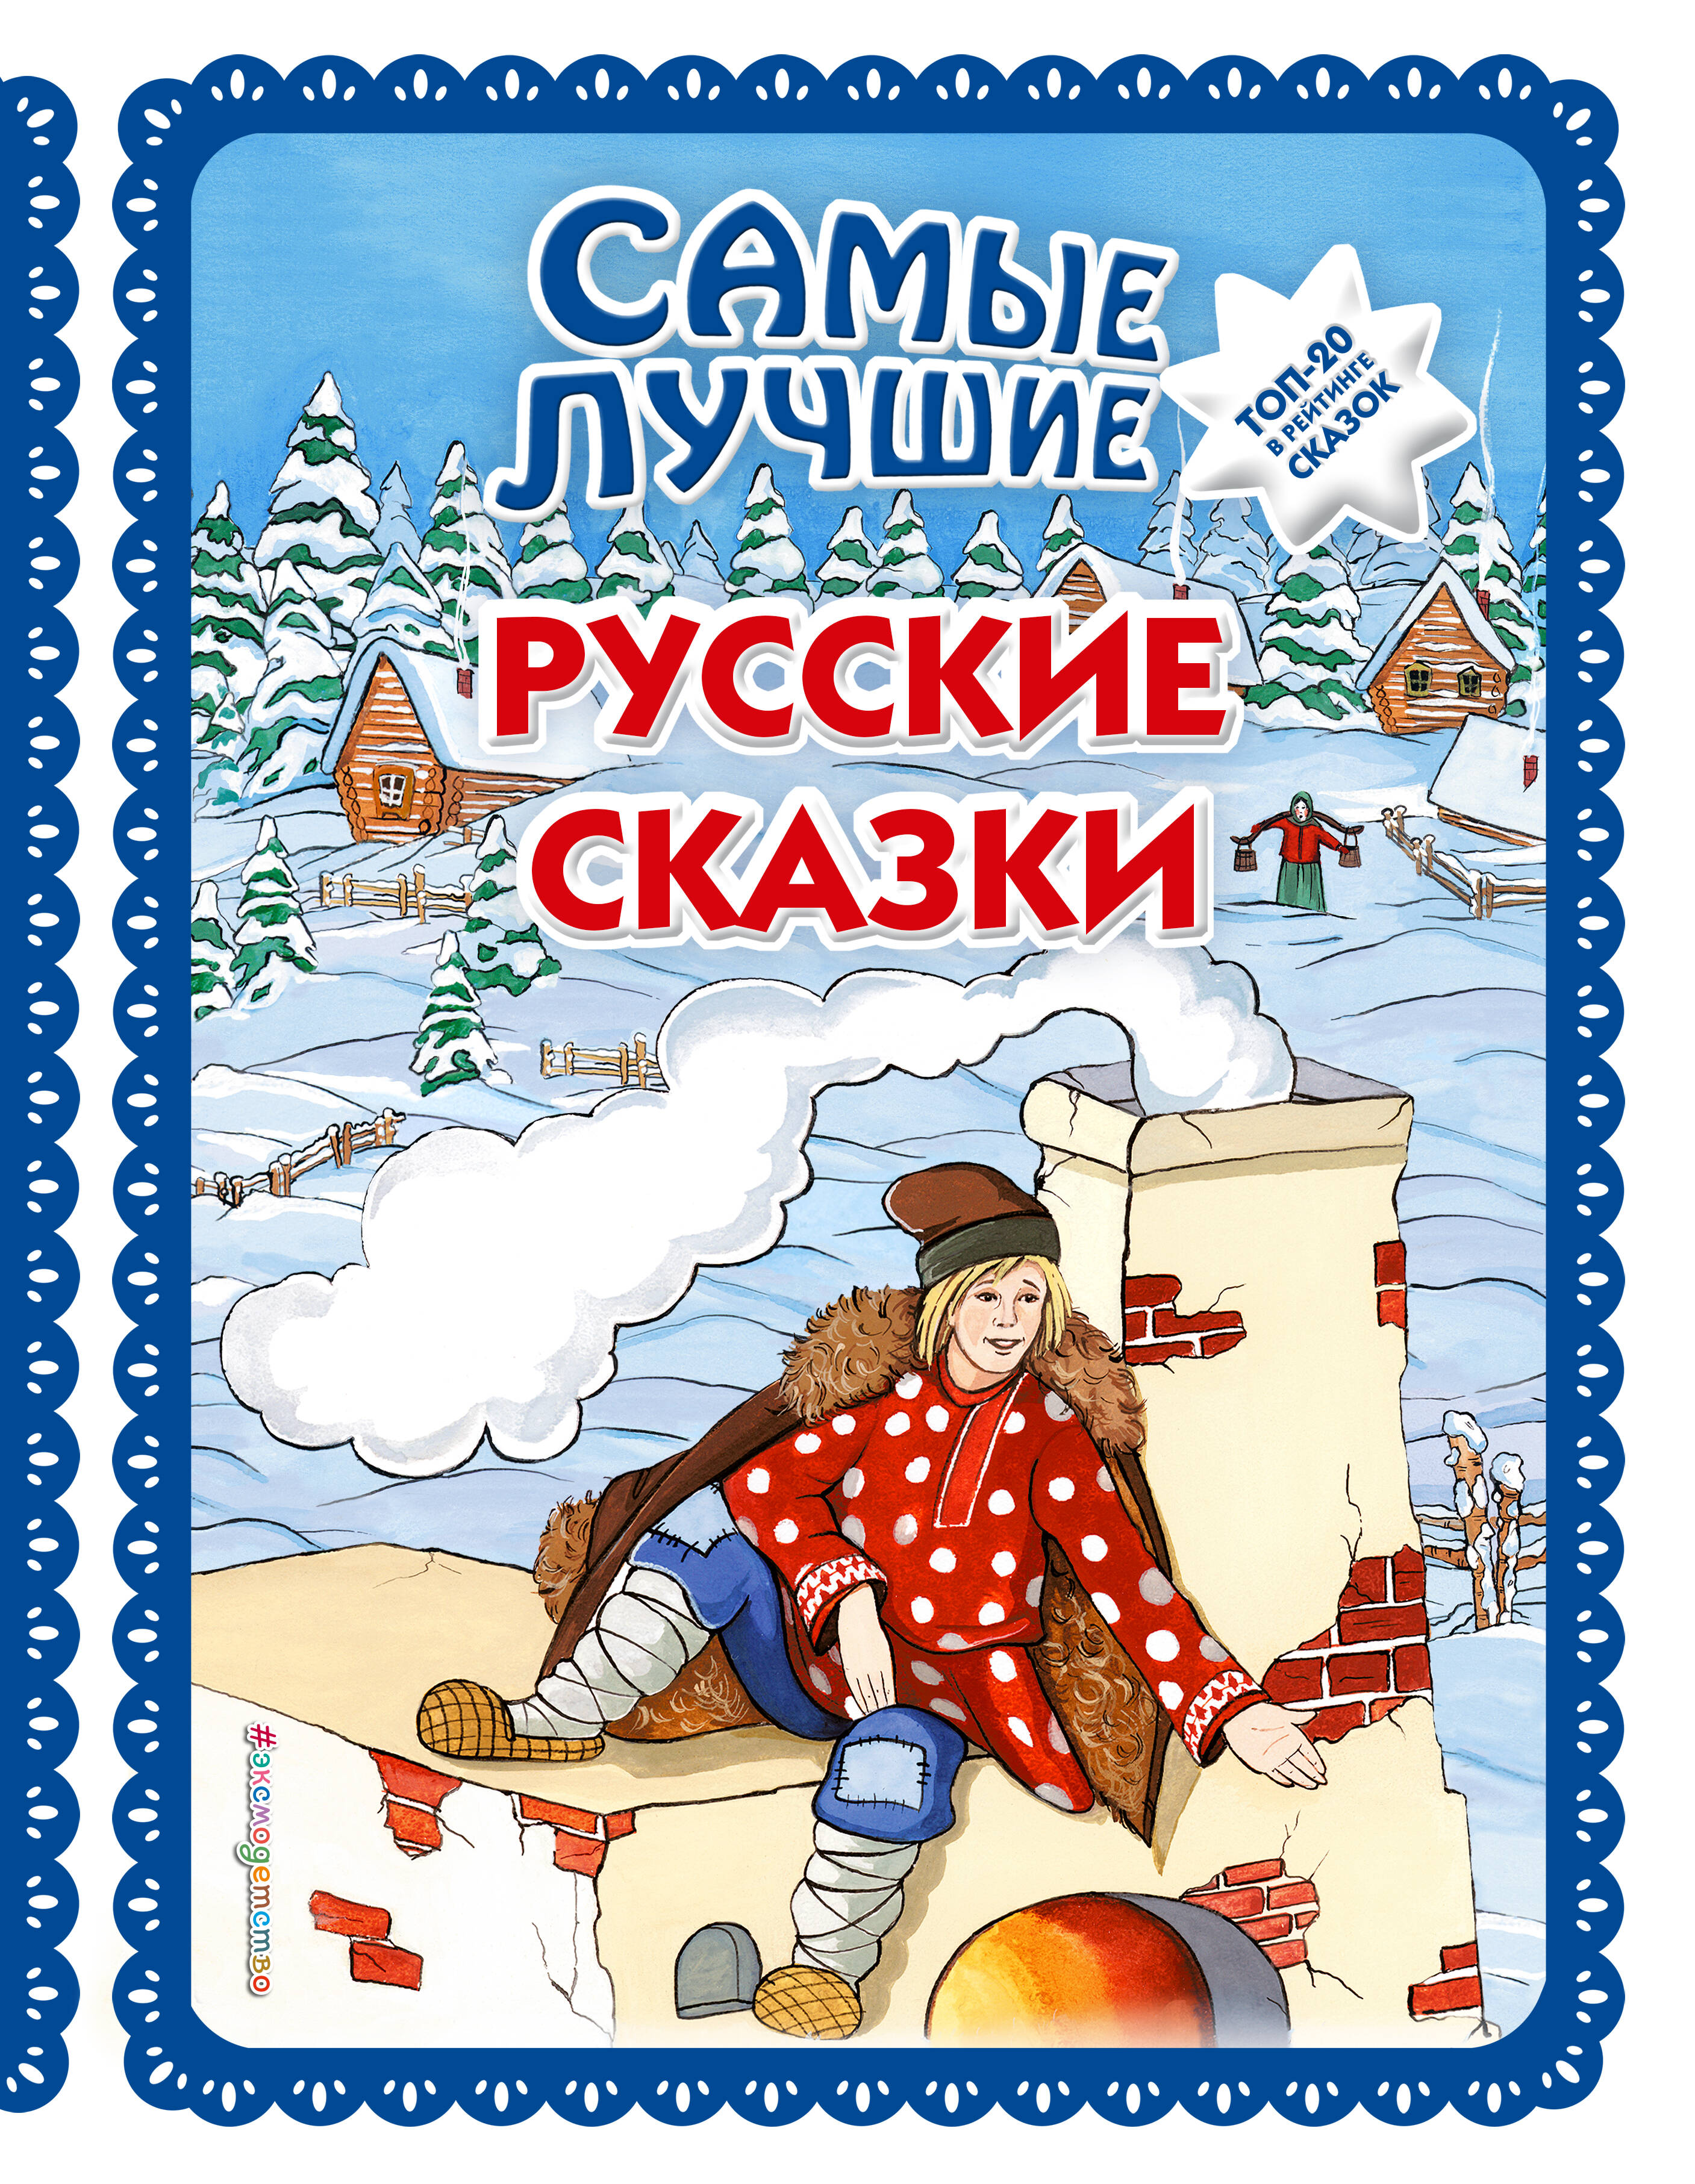 Самые лучшие русские сказки по щучьему велению русские народные сказки